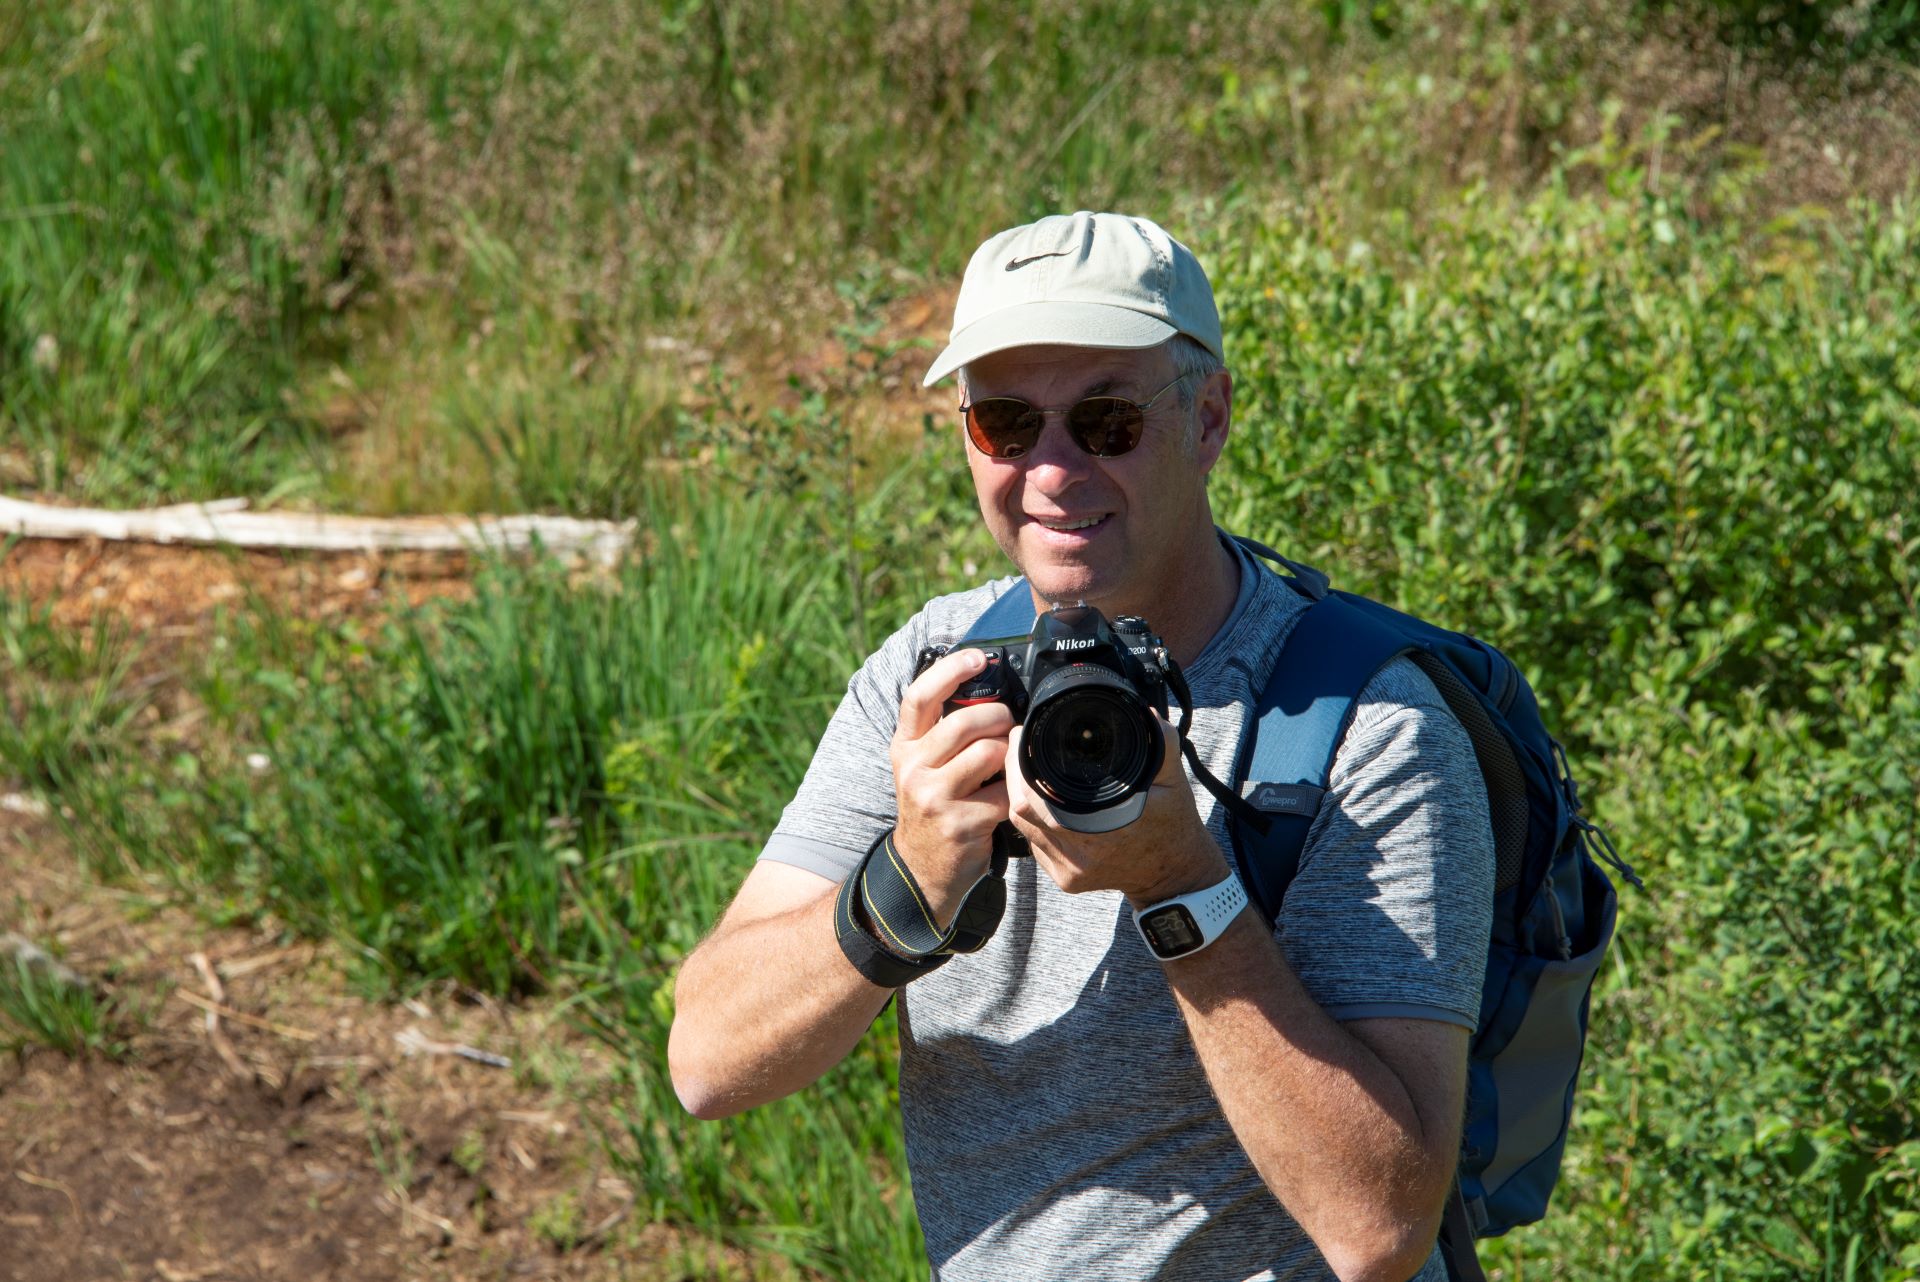 Le guide touristique est photographié regardant l'appareil photo et souriant. Il porte sa caméra dans ses mains et la dirige vers le spectateur.